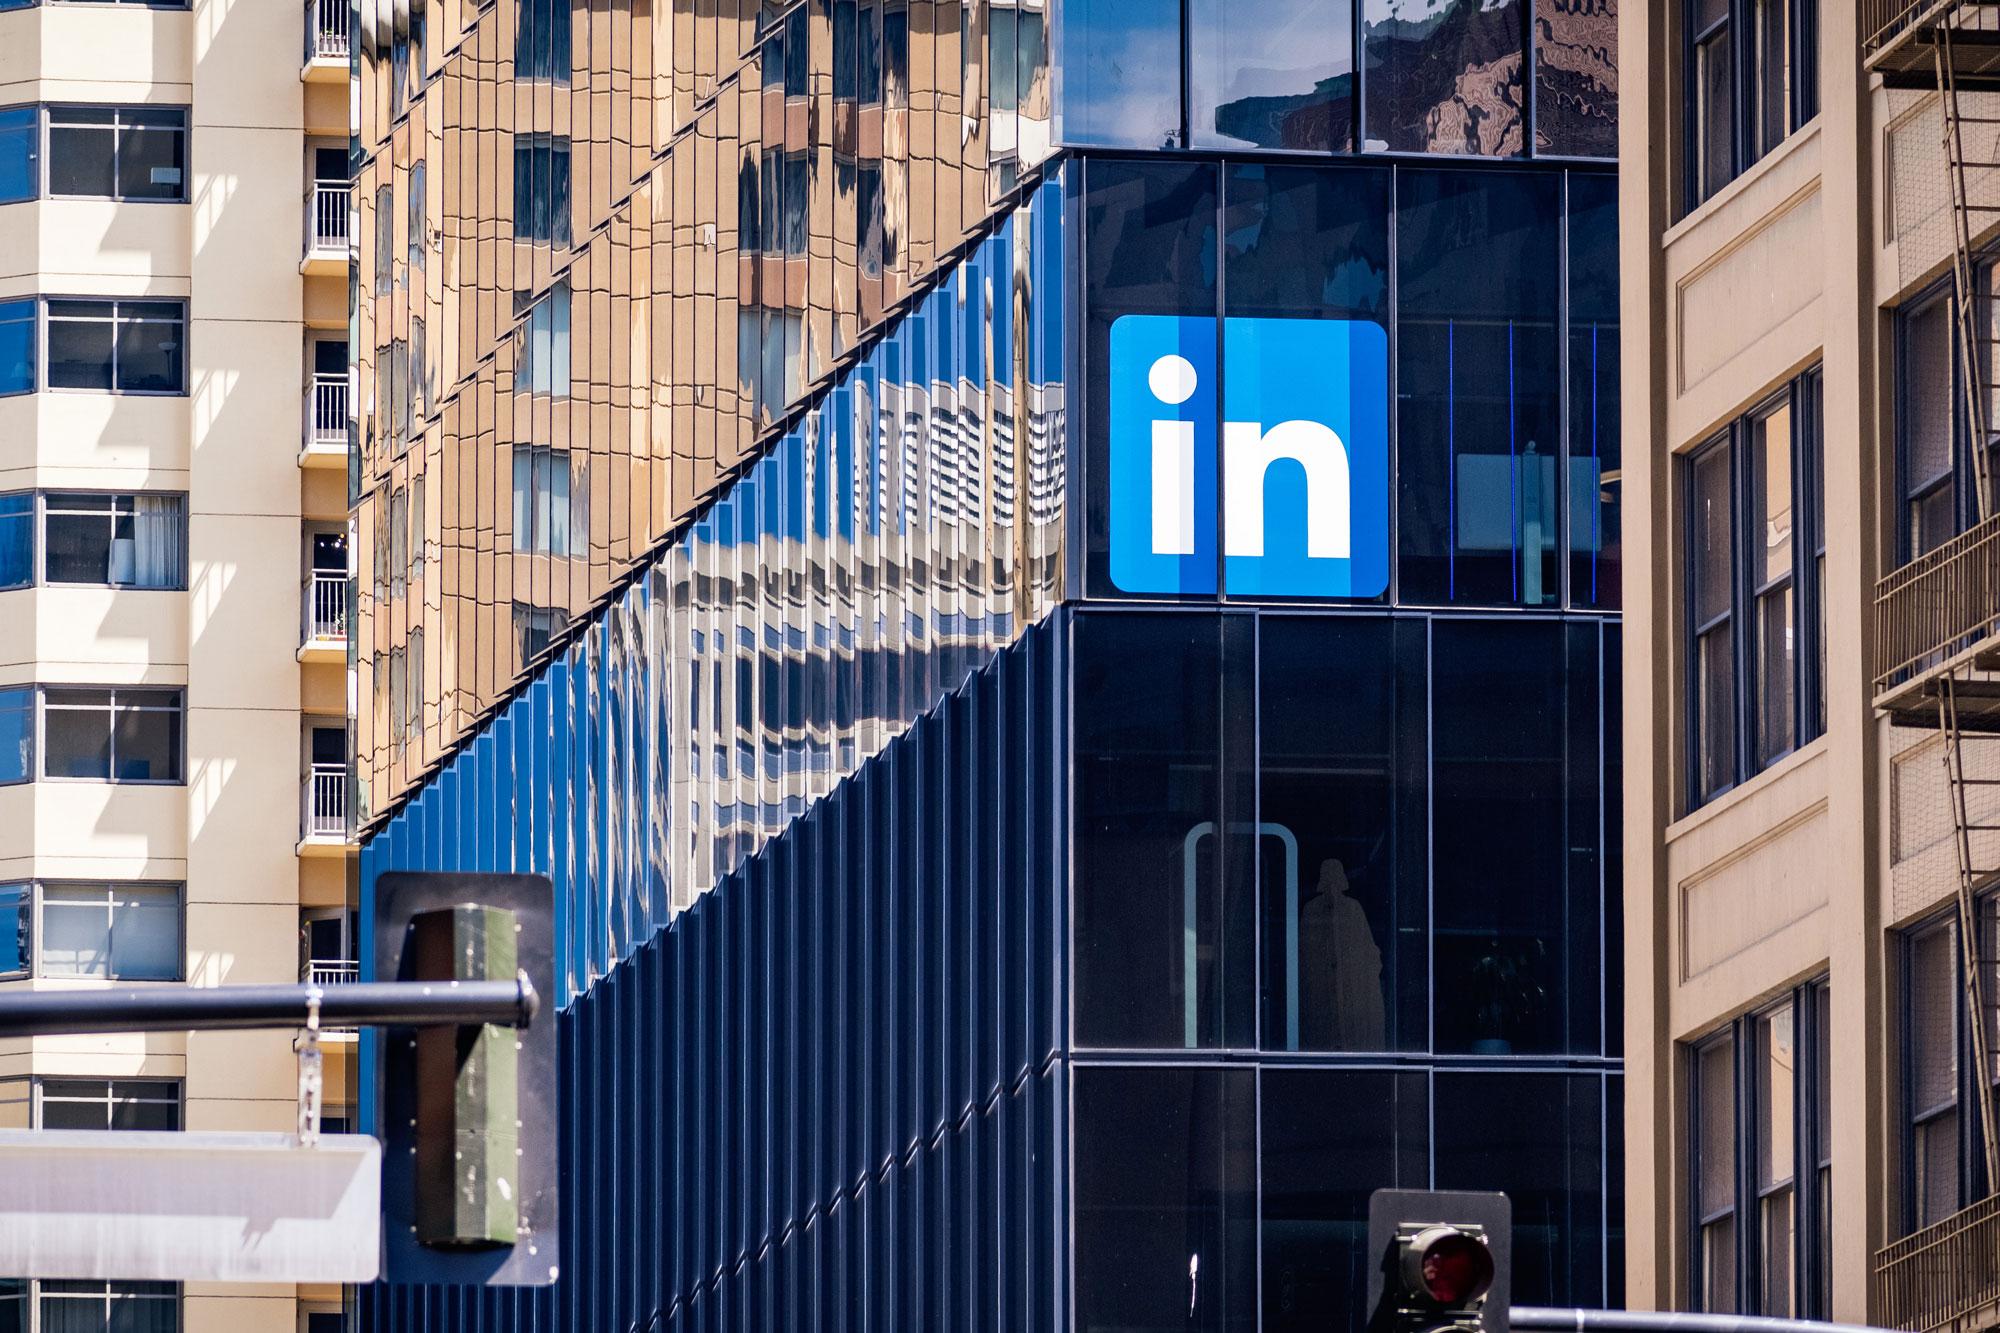 LinkedIn Corporate Building